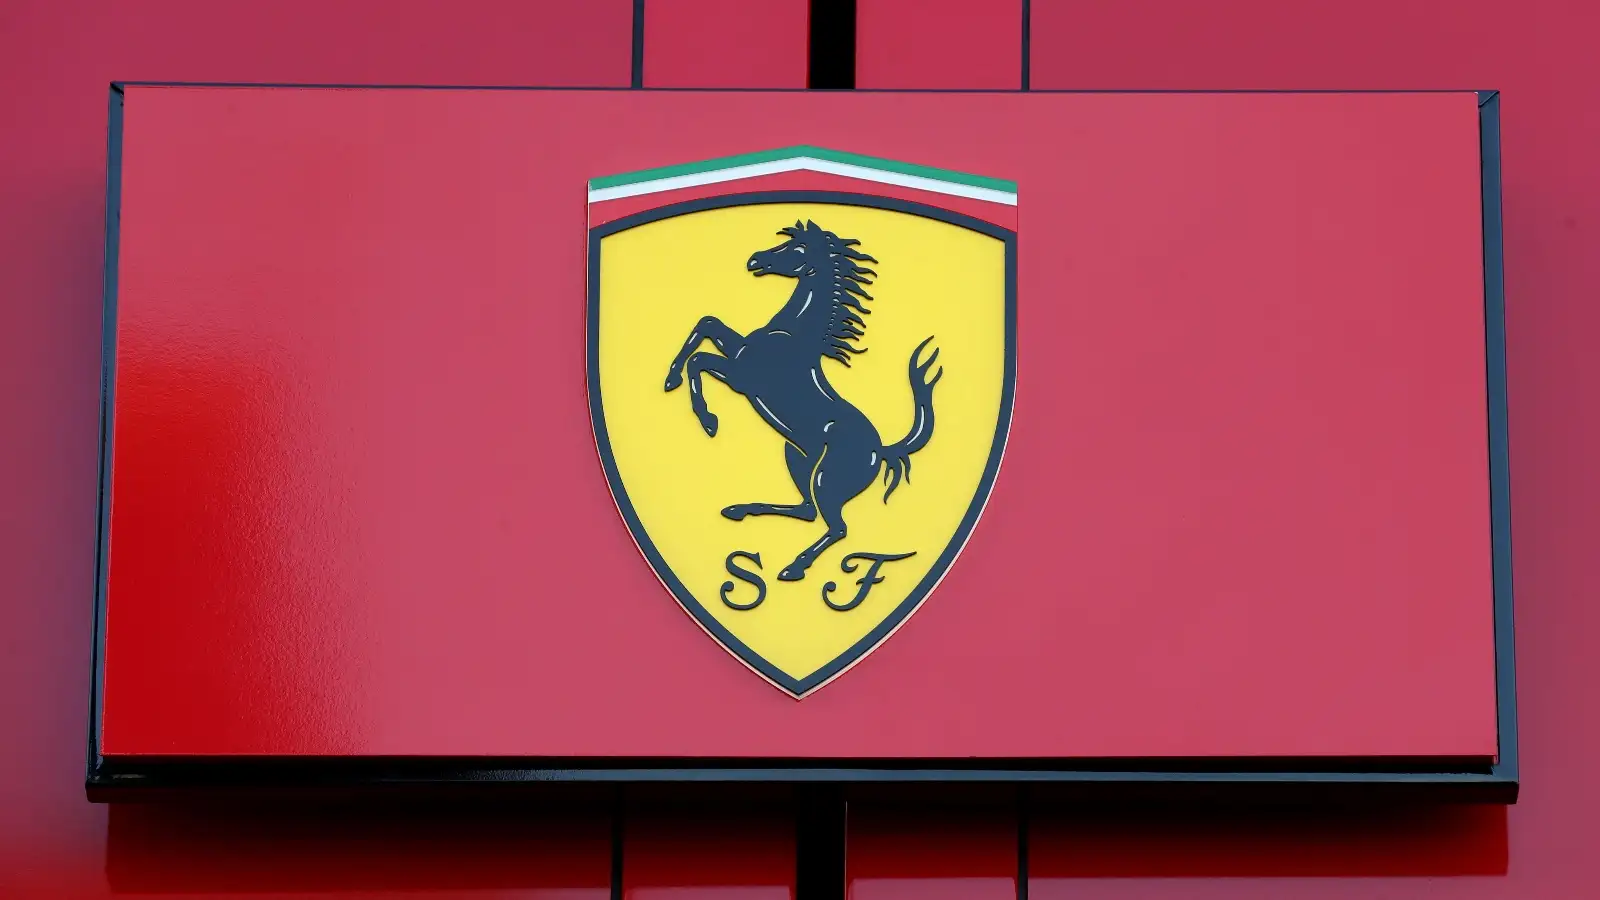 Ferrari's badge in the paddock.